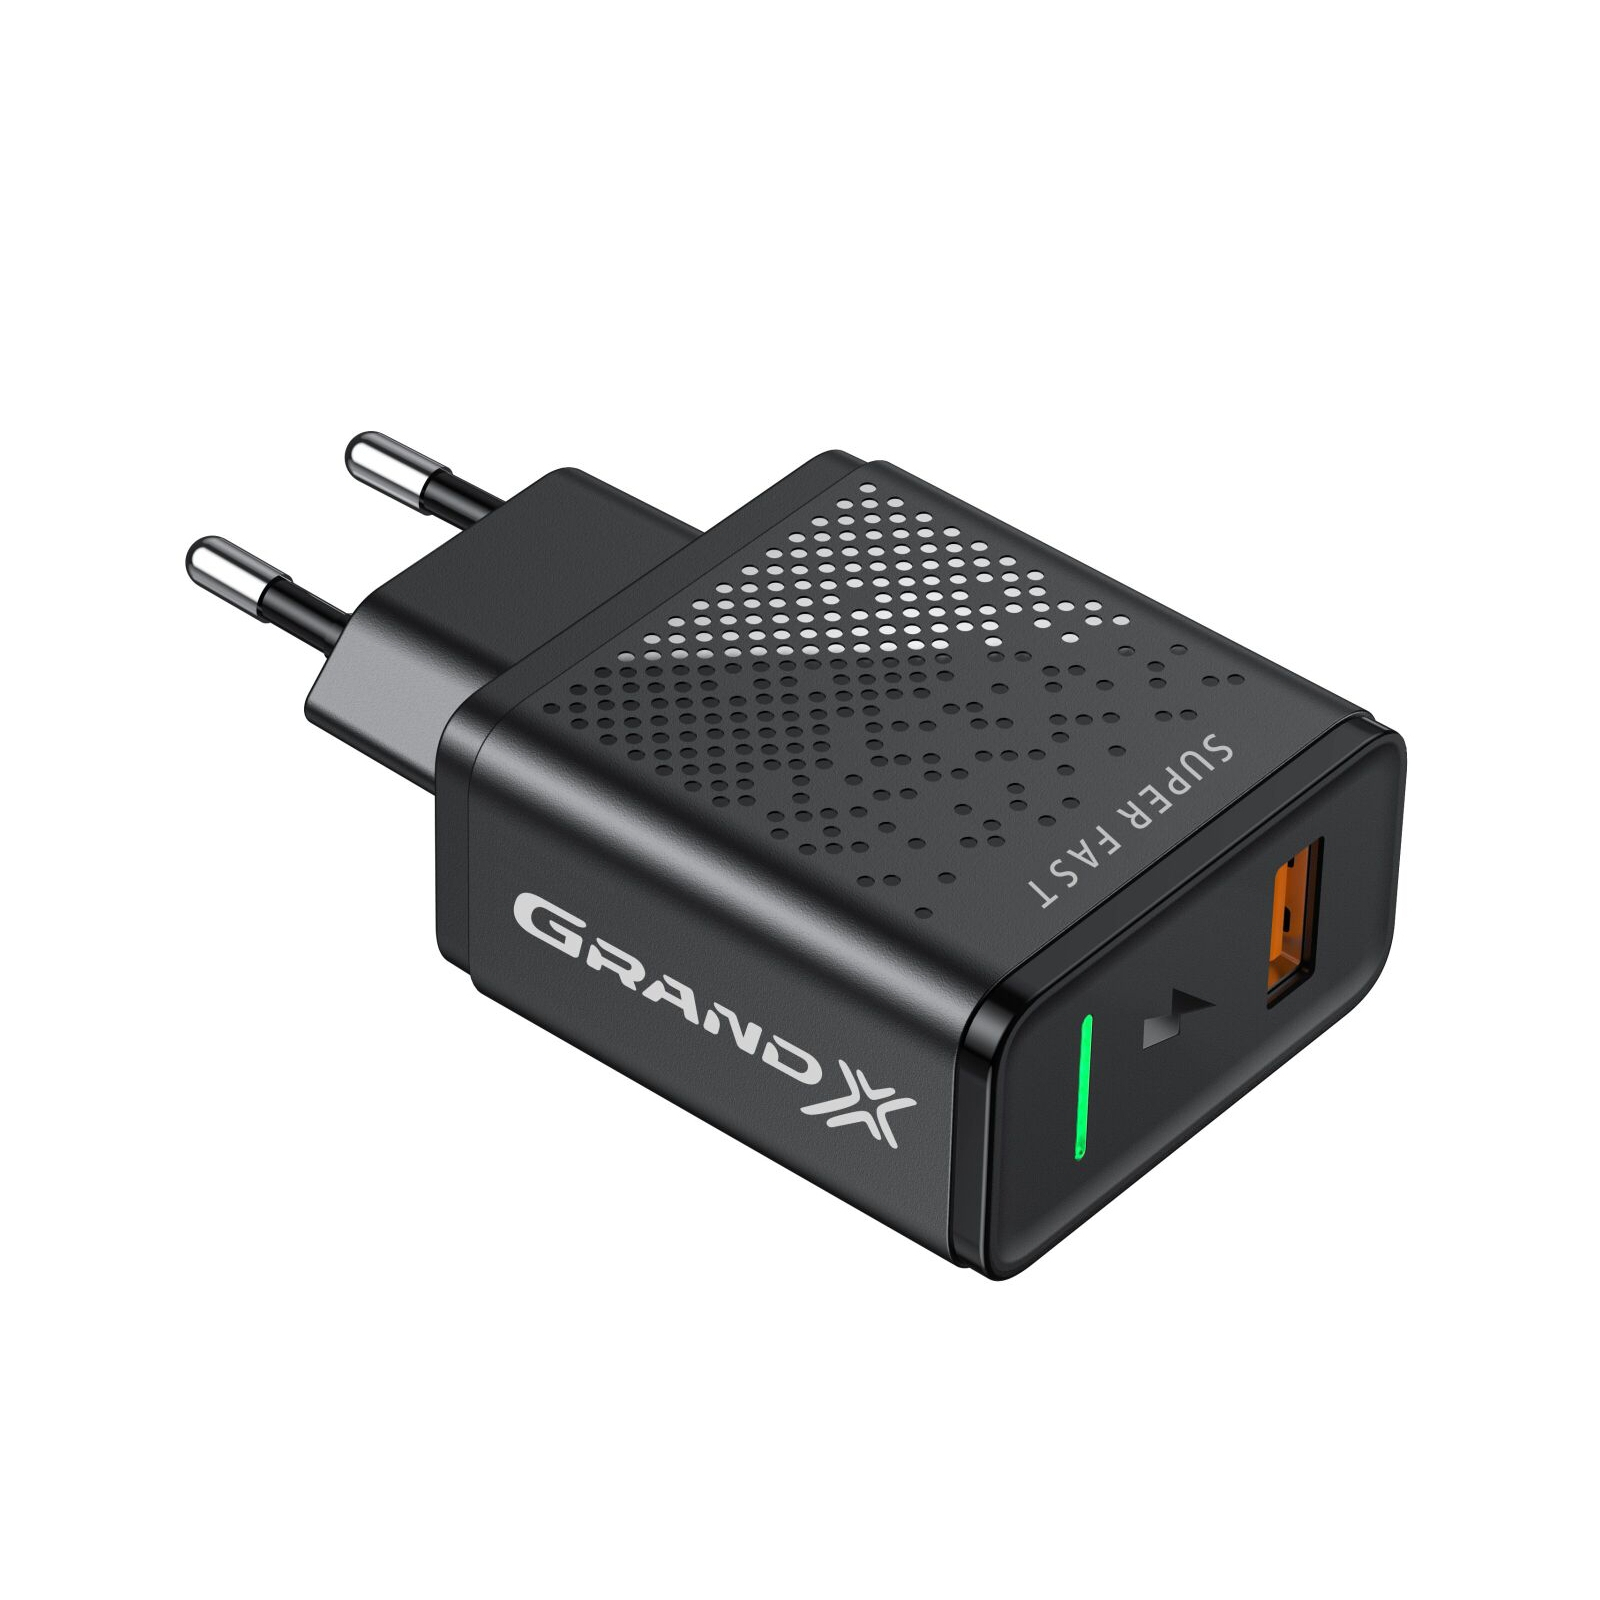 Зарядное устройство Grand-X Fast Charge 5-в-1 QC 3.0, AFC, SCP,FCP, VOOC, 1 USB 22.5W (CH-850) изображение 2